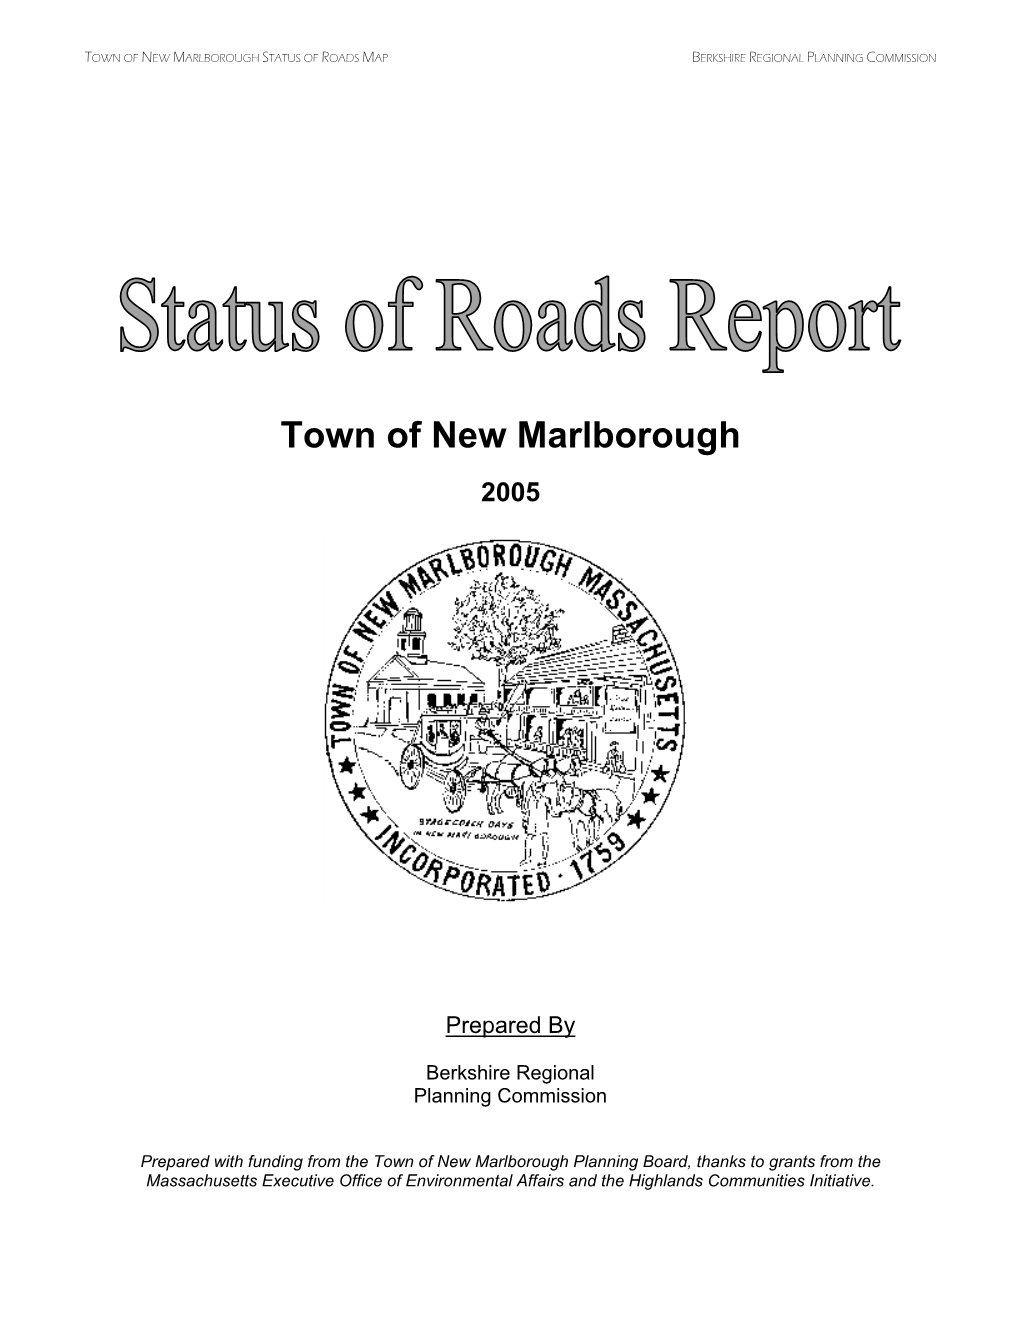 NM PB Status of Roads Report 05